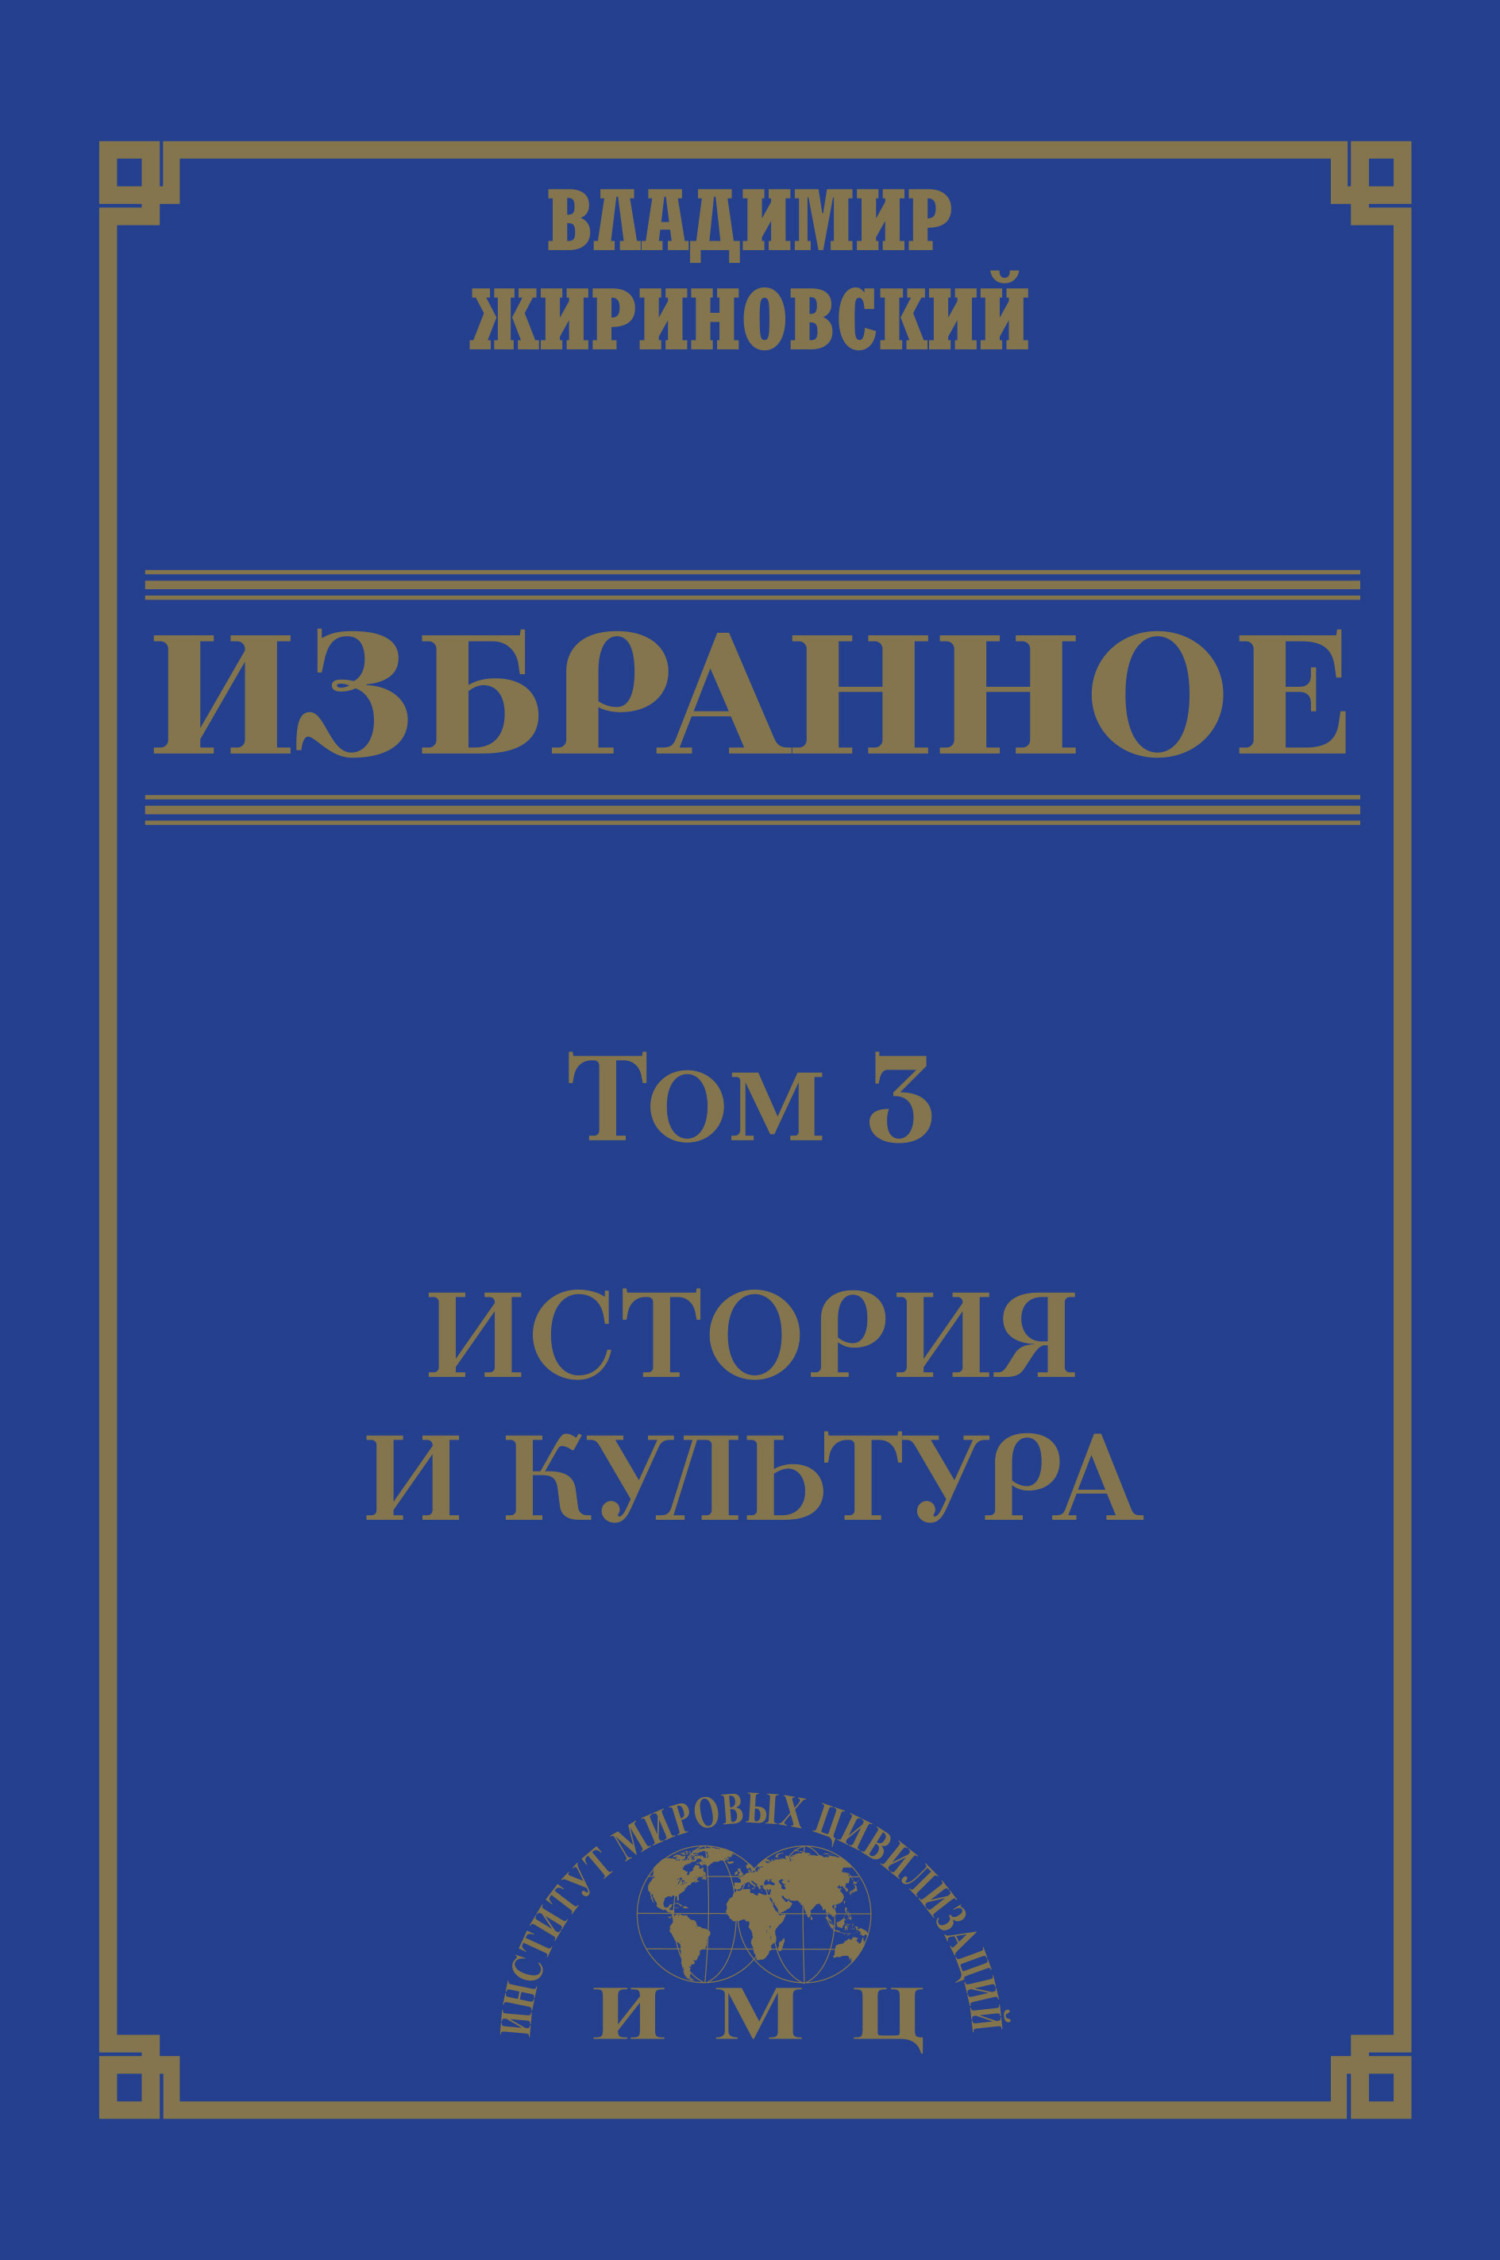 Избранное в 3 томах. Том 3: История и культура - Владимир Вольфович Жириновский